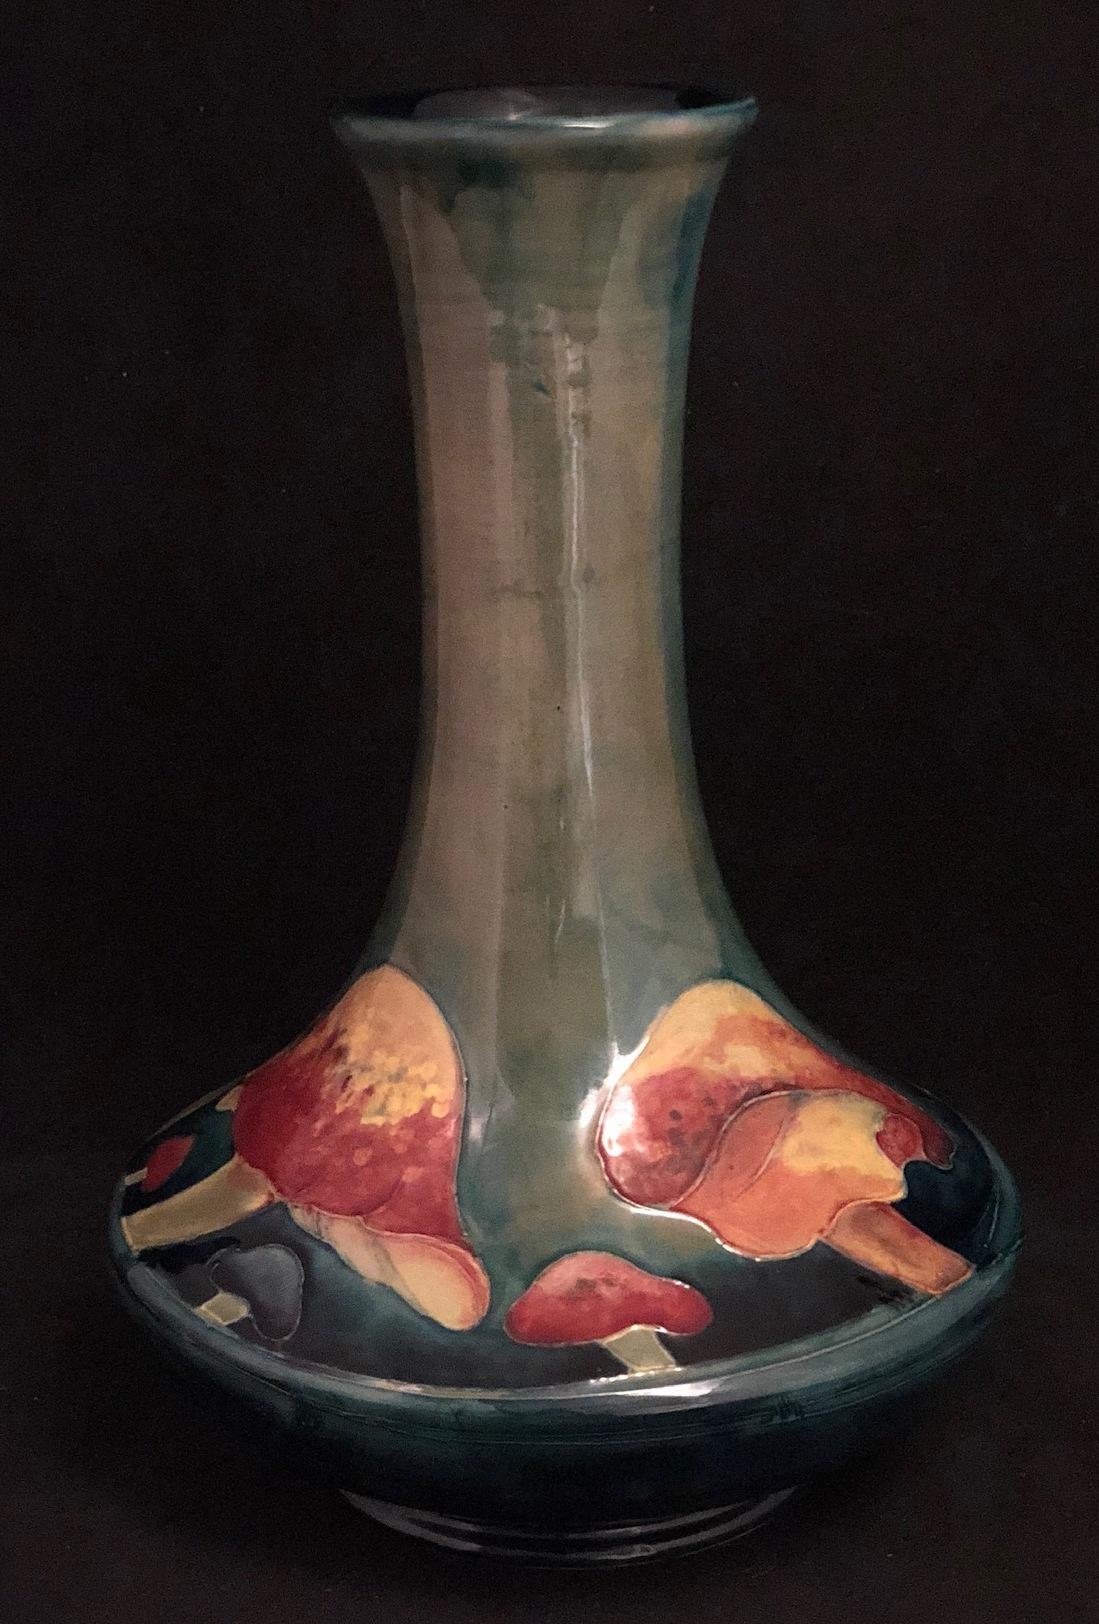 5862

Grand vase William Moorcroft dans le design Claremont Circa 1920

Dimensions
30 cm de haut, 20 cm de large

Affranchissement assuré gratuit
Garantie de remboursement de 14 jours
Membre de la BADA - achetez ce qu'il y a de mieux chez